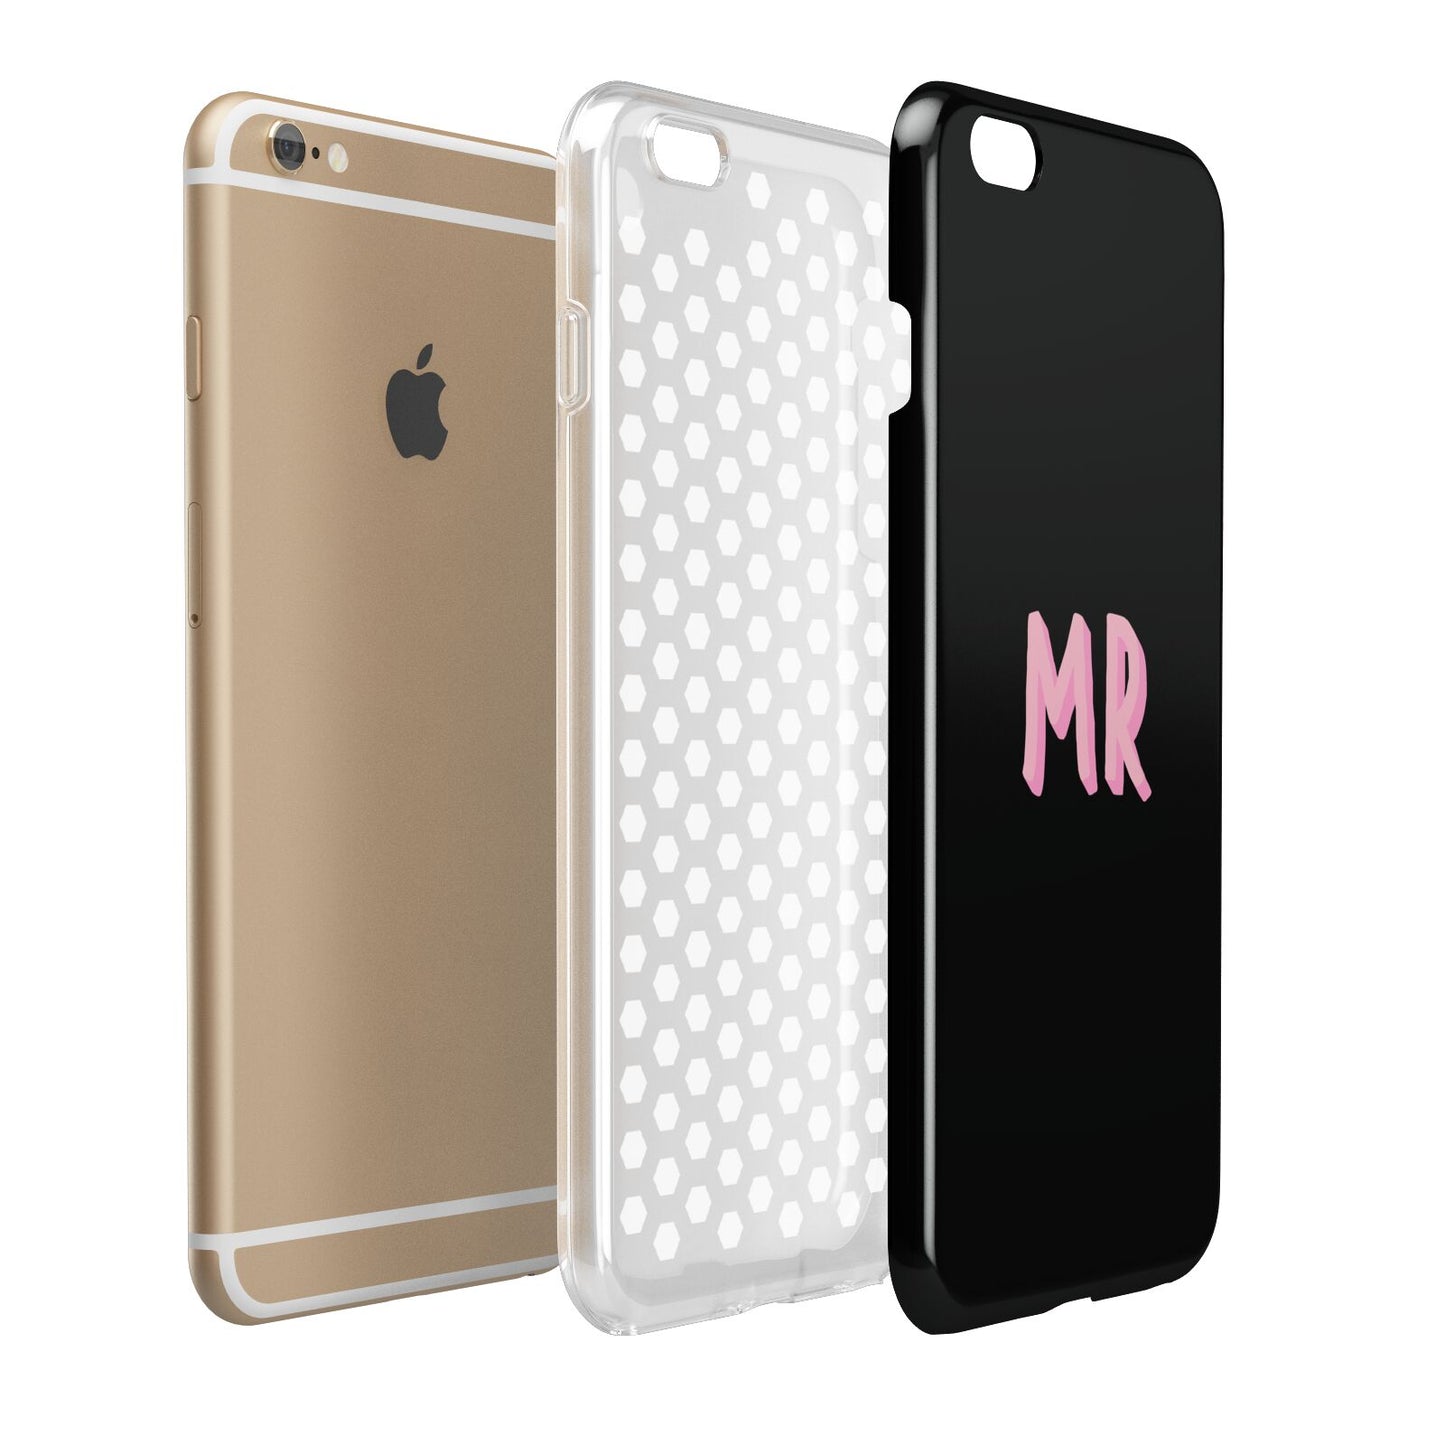 Mr Apple iPhone 6 Plus 3D Tough Case Expand Detail Image